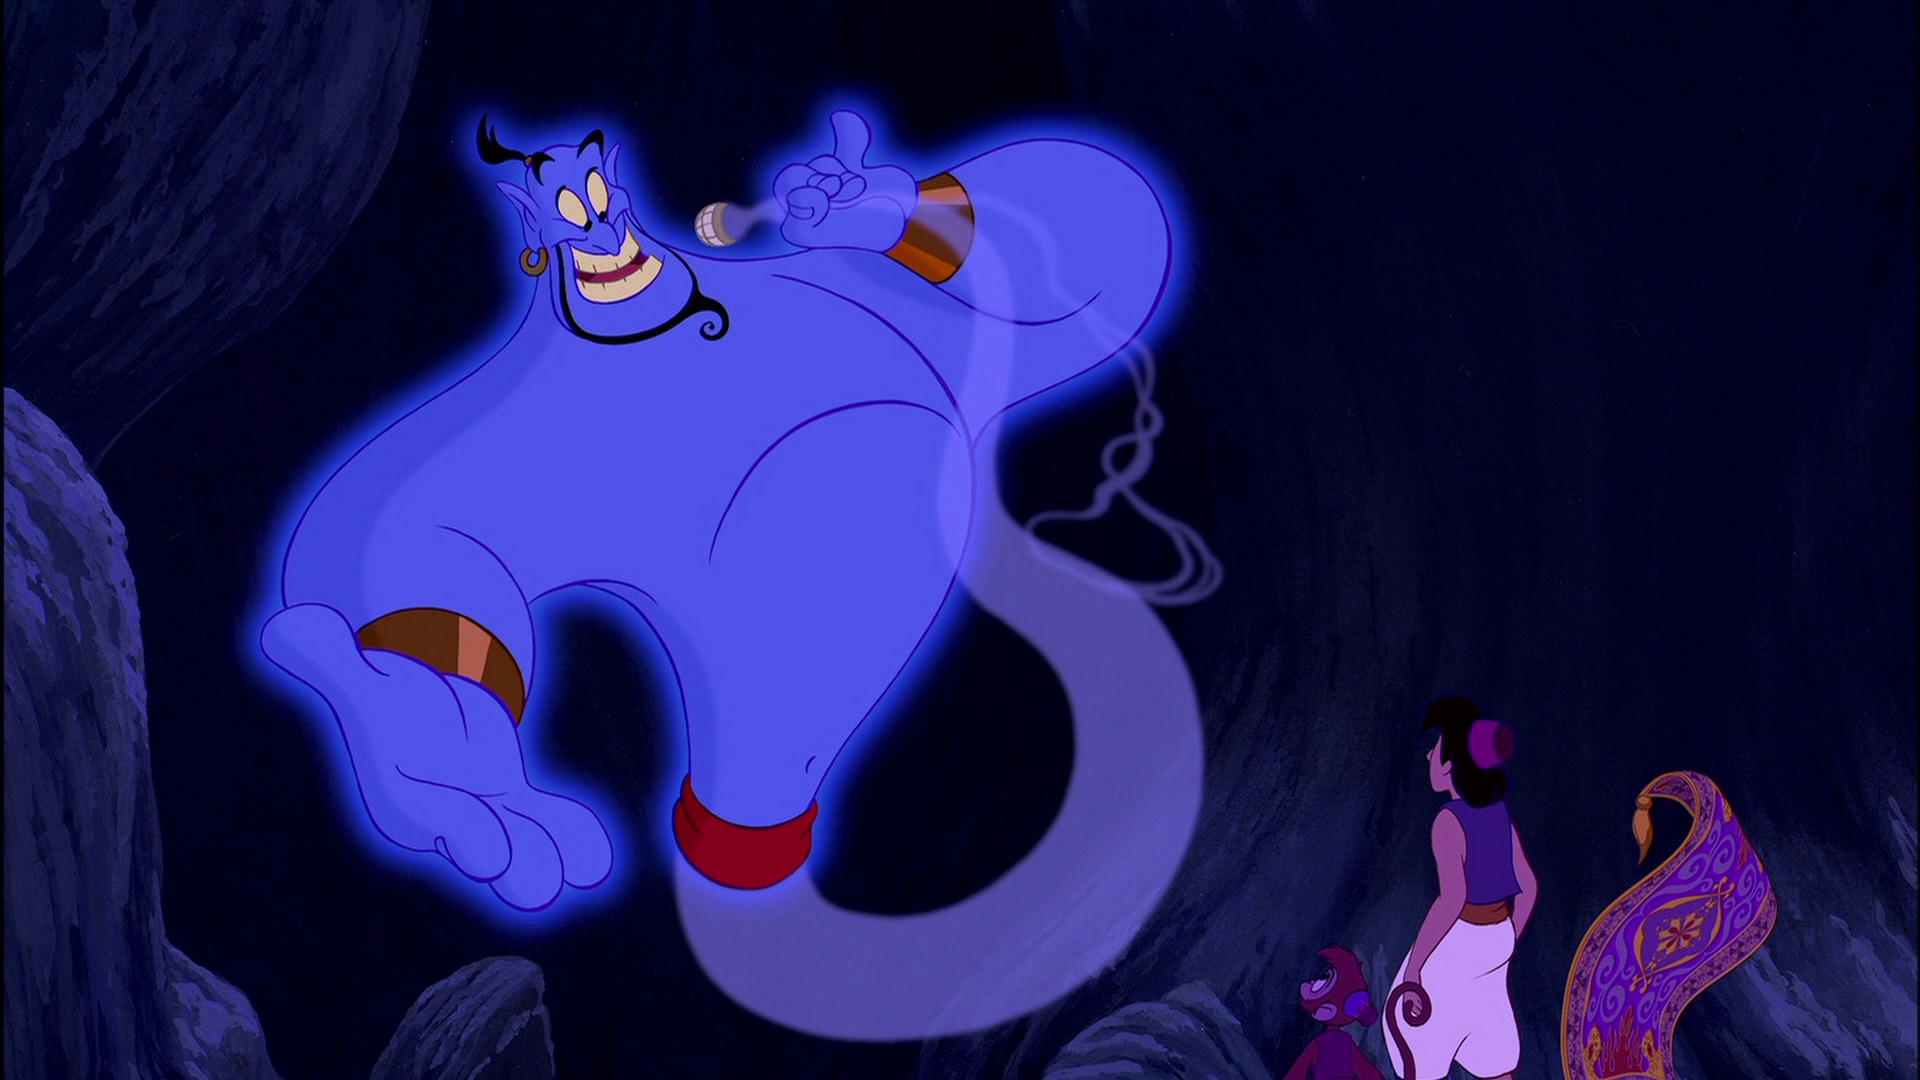 Genie, Aladdin